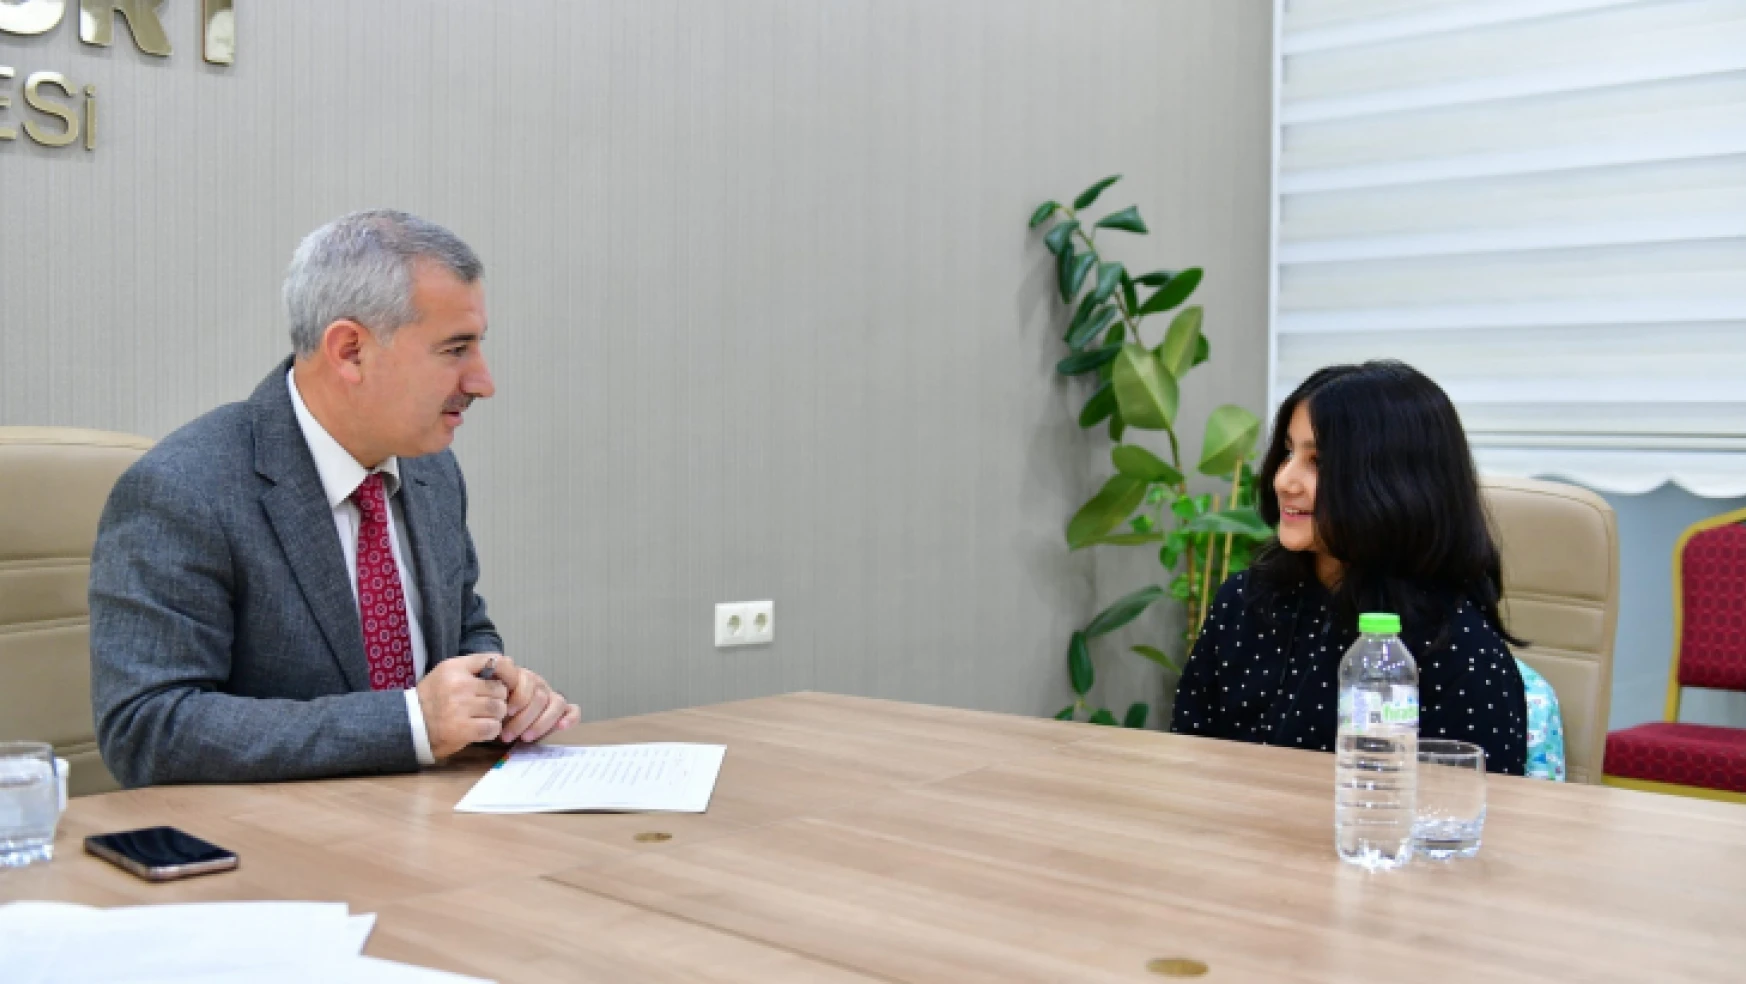 Yeşilyurt Belediye Başkanı Mehmet Çınar, 'Halk Günü' Toplantılarıyla Vatandaşların İstek Ve Taleplerini Çözüme Kavuşturuyor